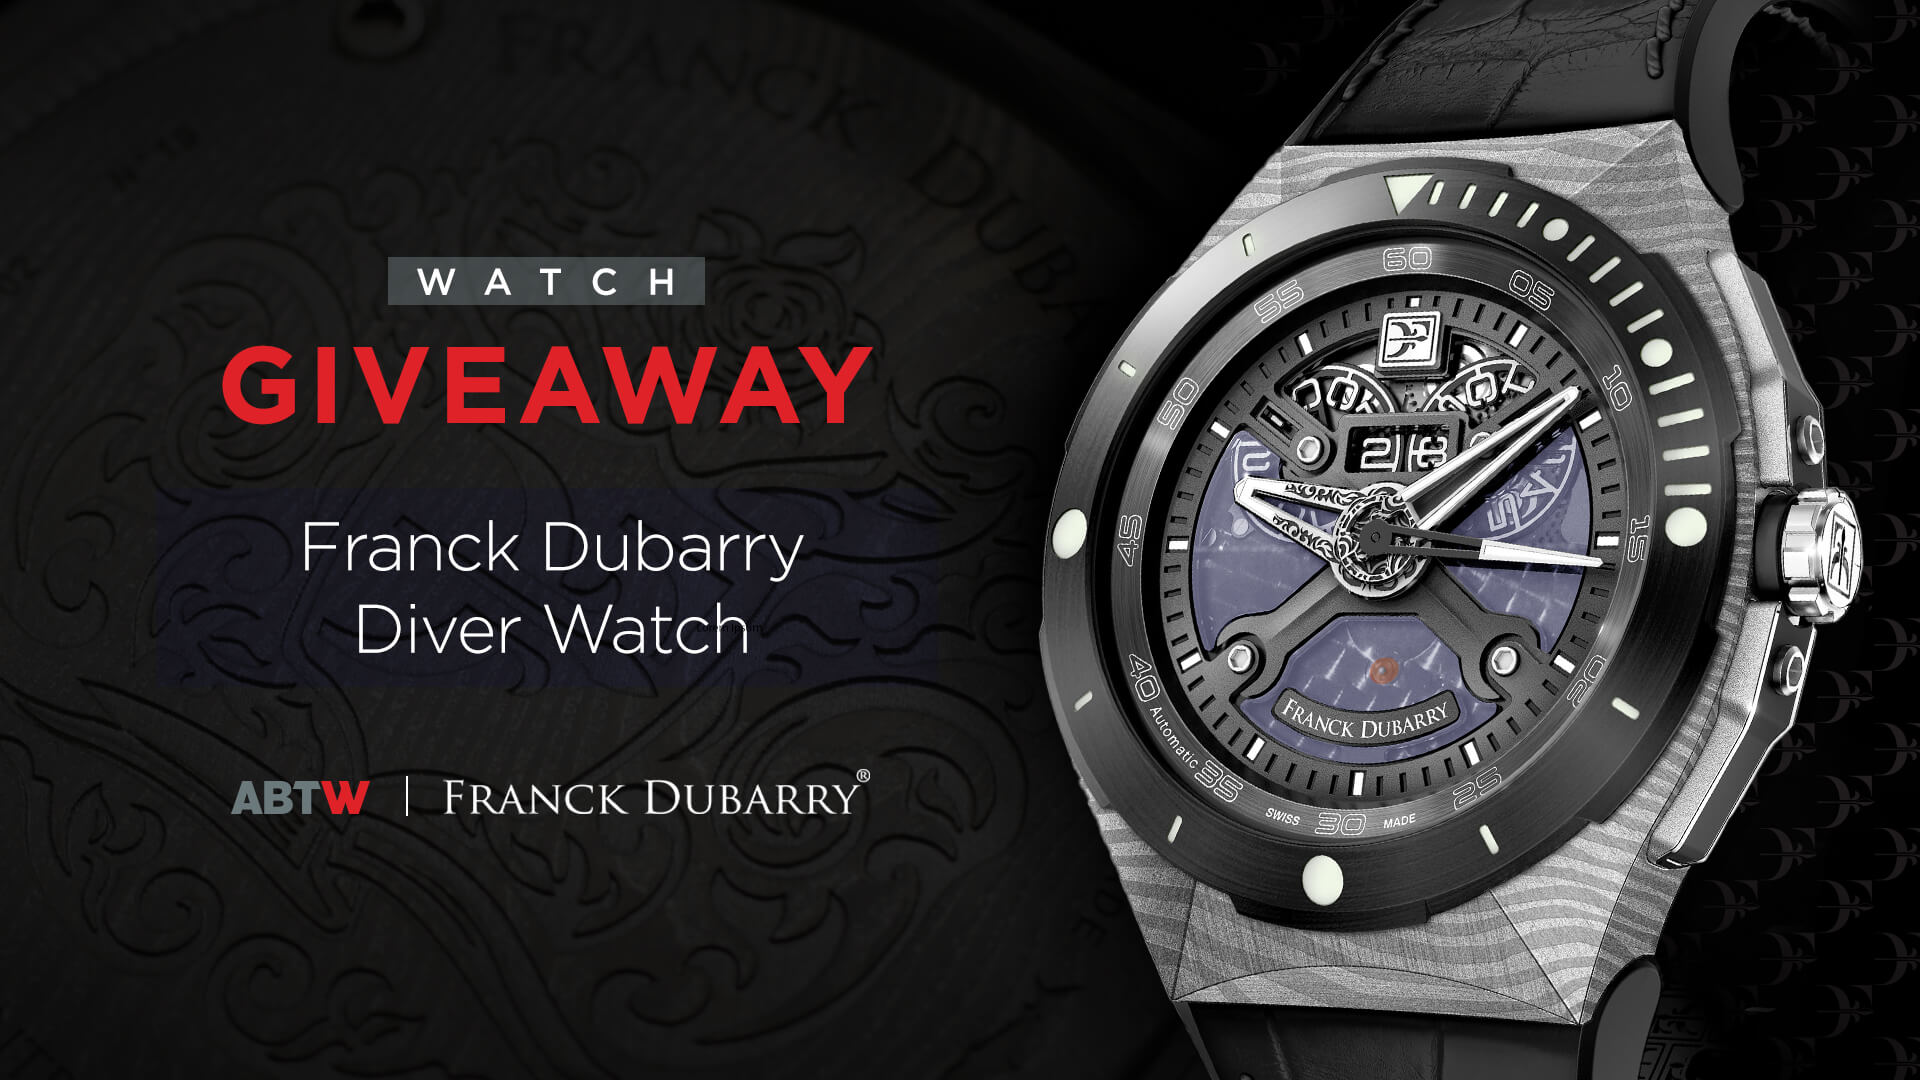 Winner Announced: Franck Dubarry Diver Watch